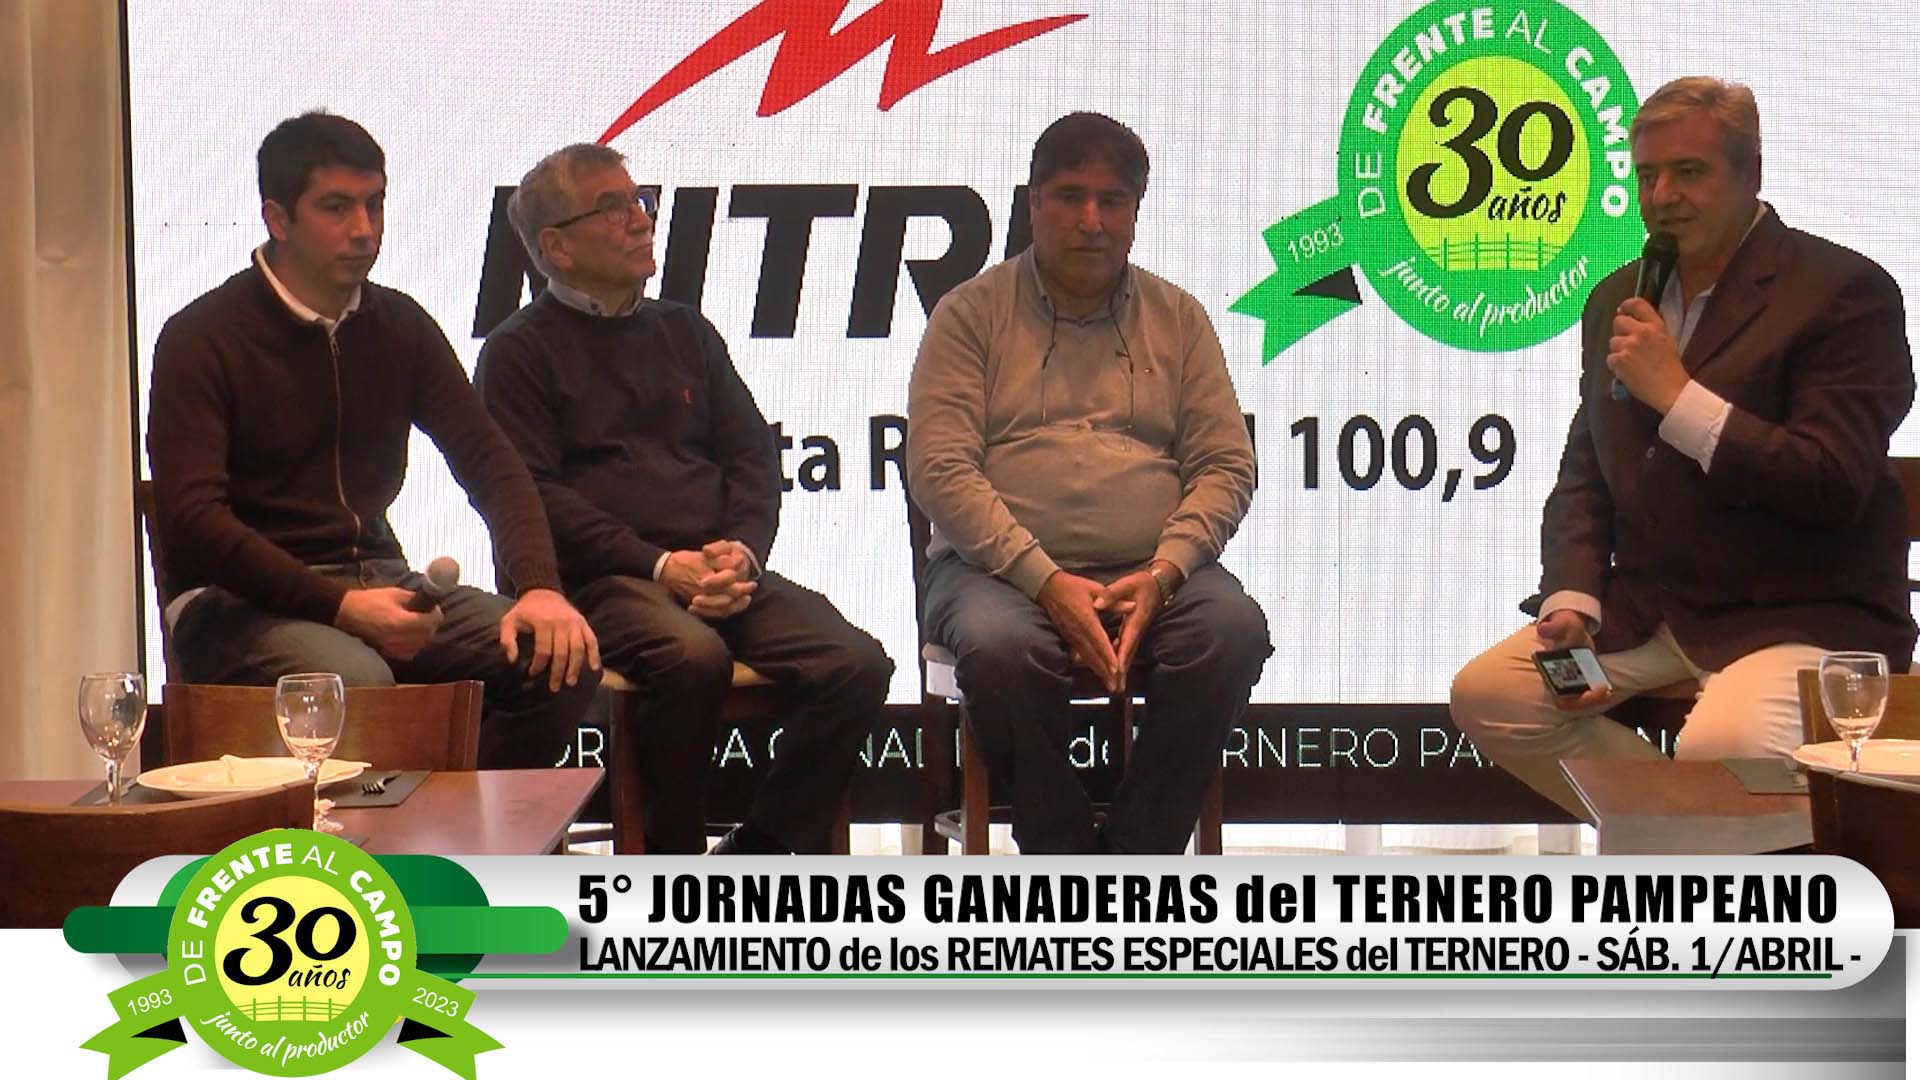 Lanzamiento de los Remates del Ternero: Martín Correa – Oscar Brañas – Hugo Olmos –